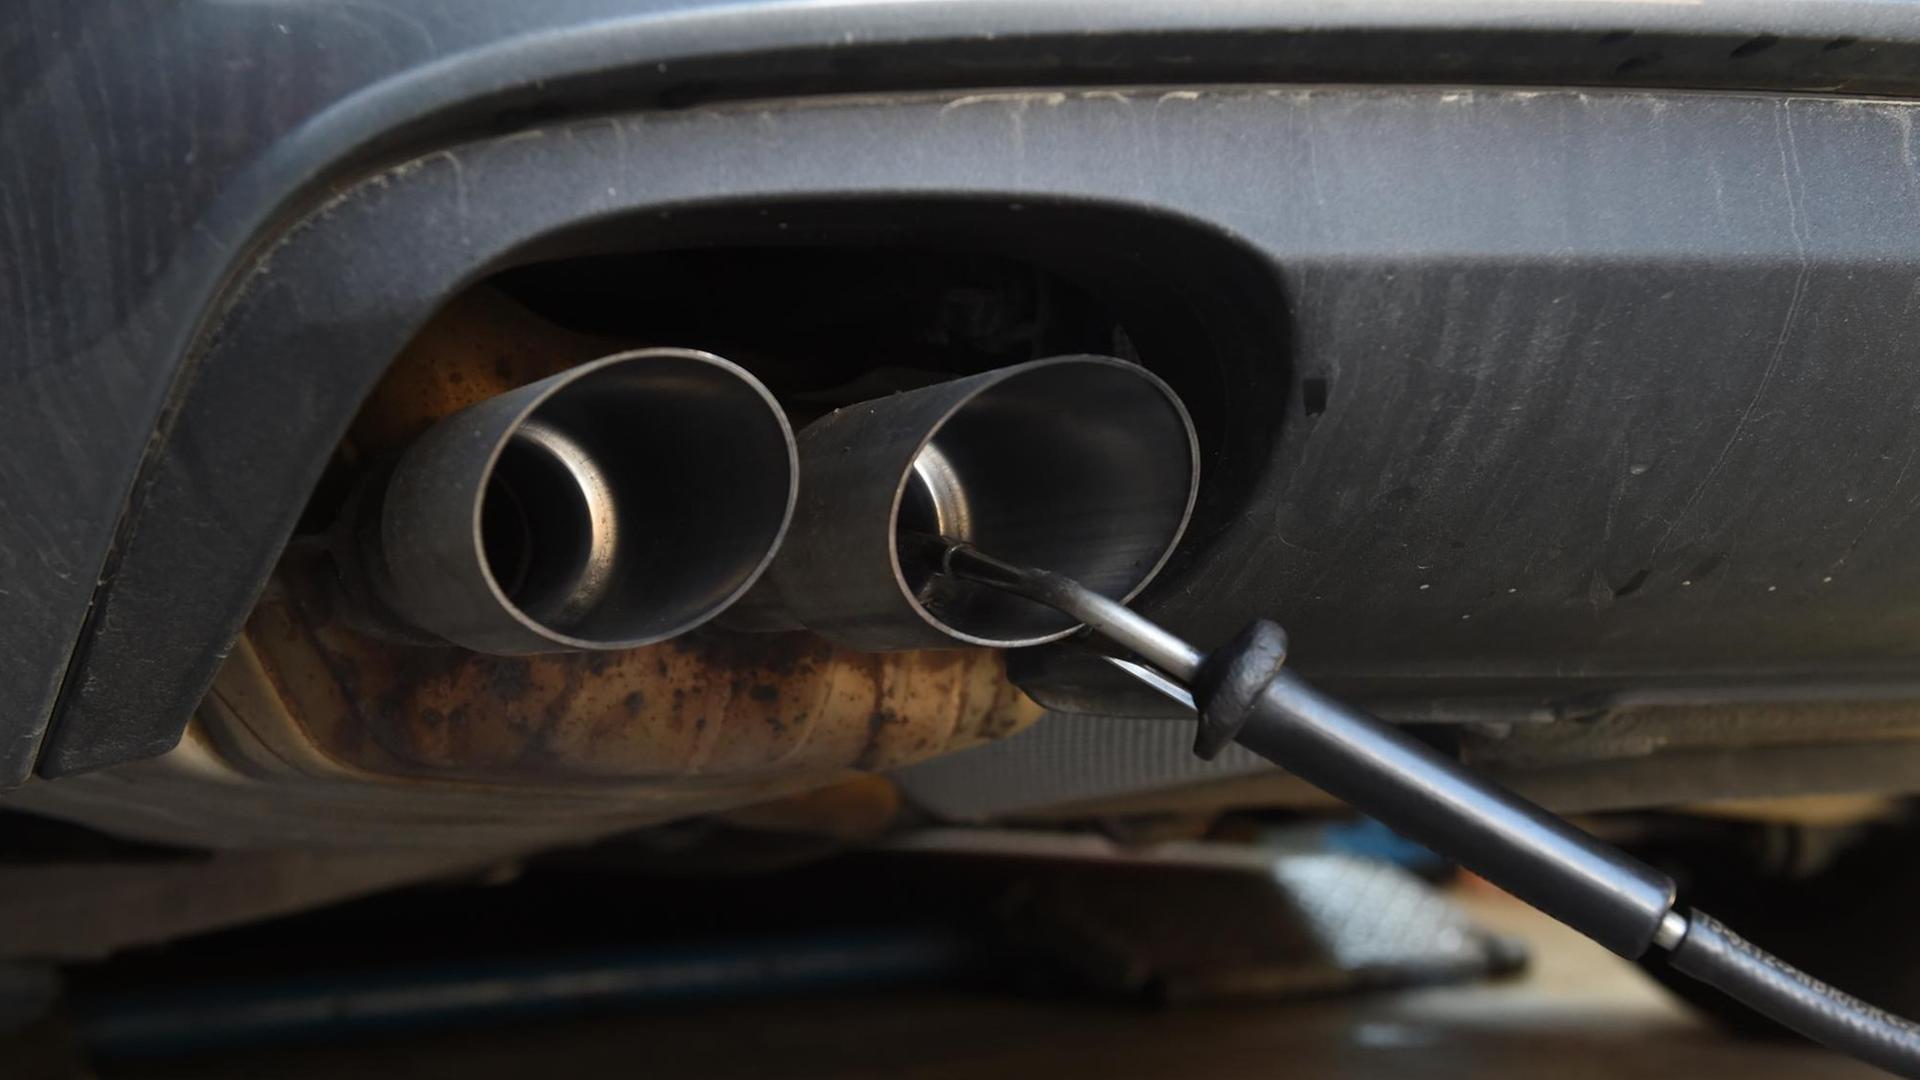 Rechtsmittel - Umwelthilfe geht juristisch gegen Abschaltvorrichtungen neuerer Diesel-Autos vor